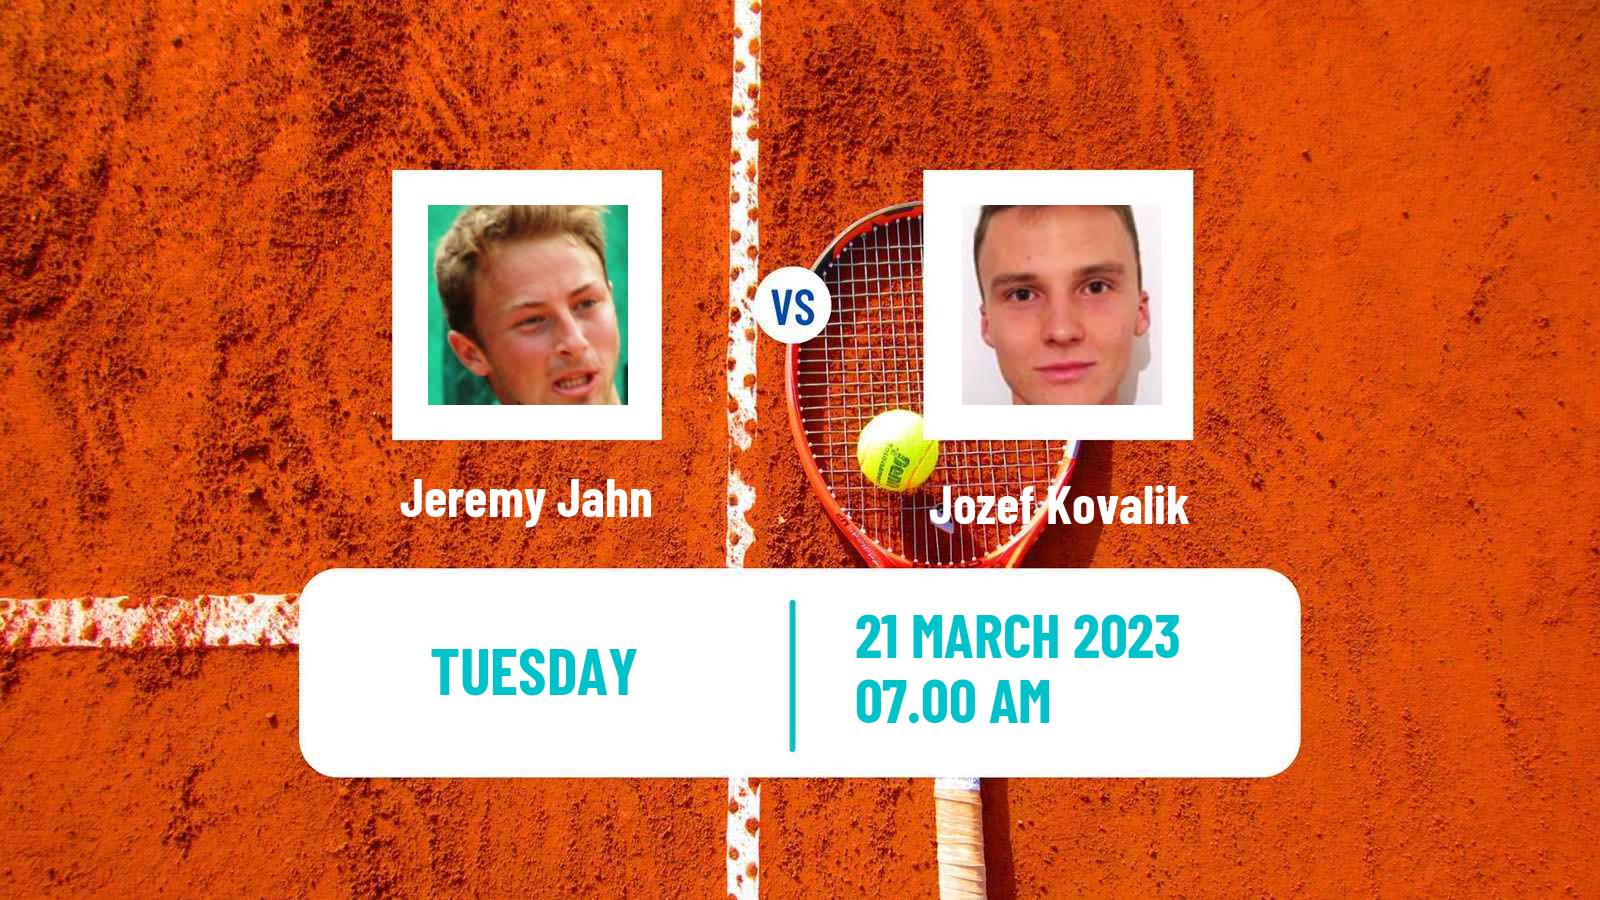 Tennis ATP Challenger Jeremy Jahn - Jozef Kovalik